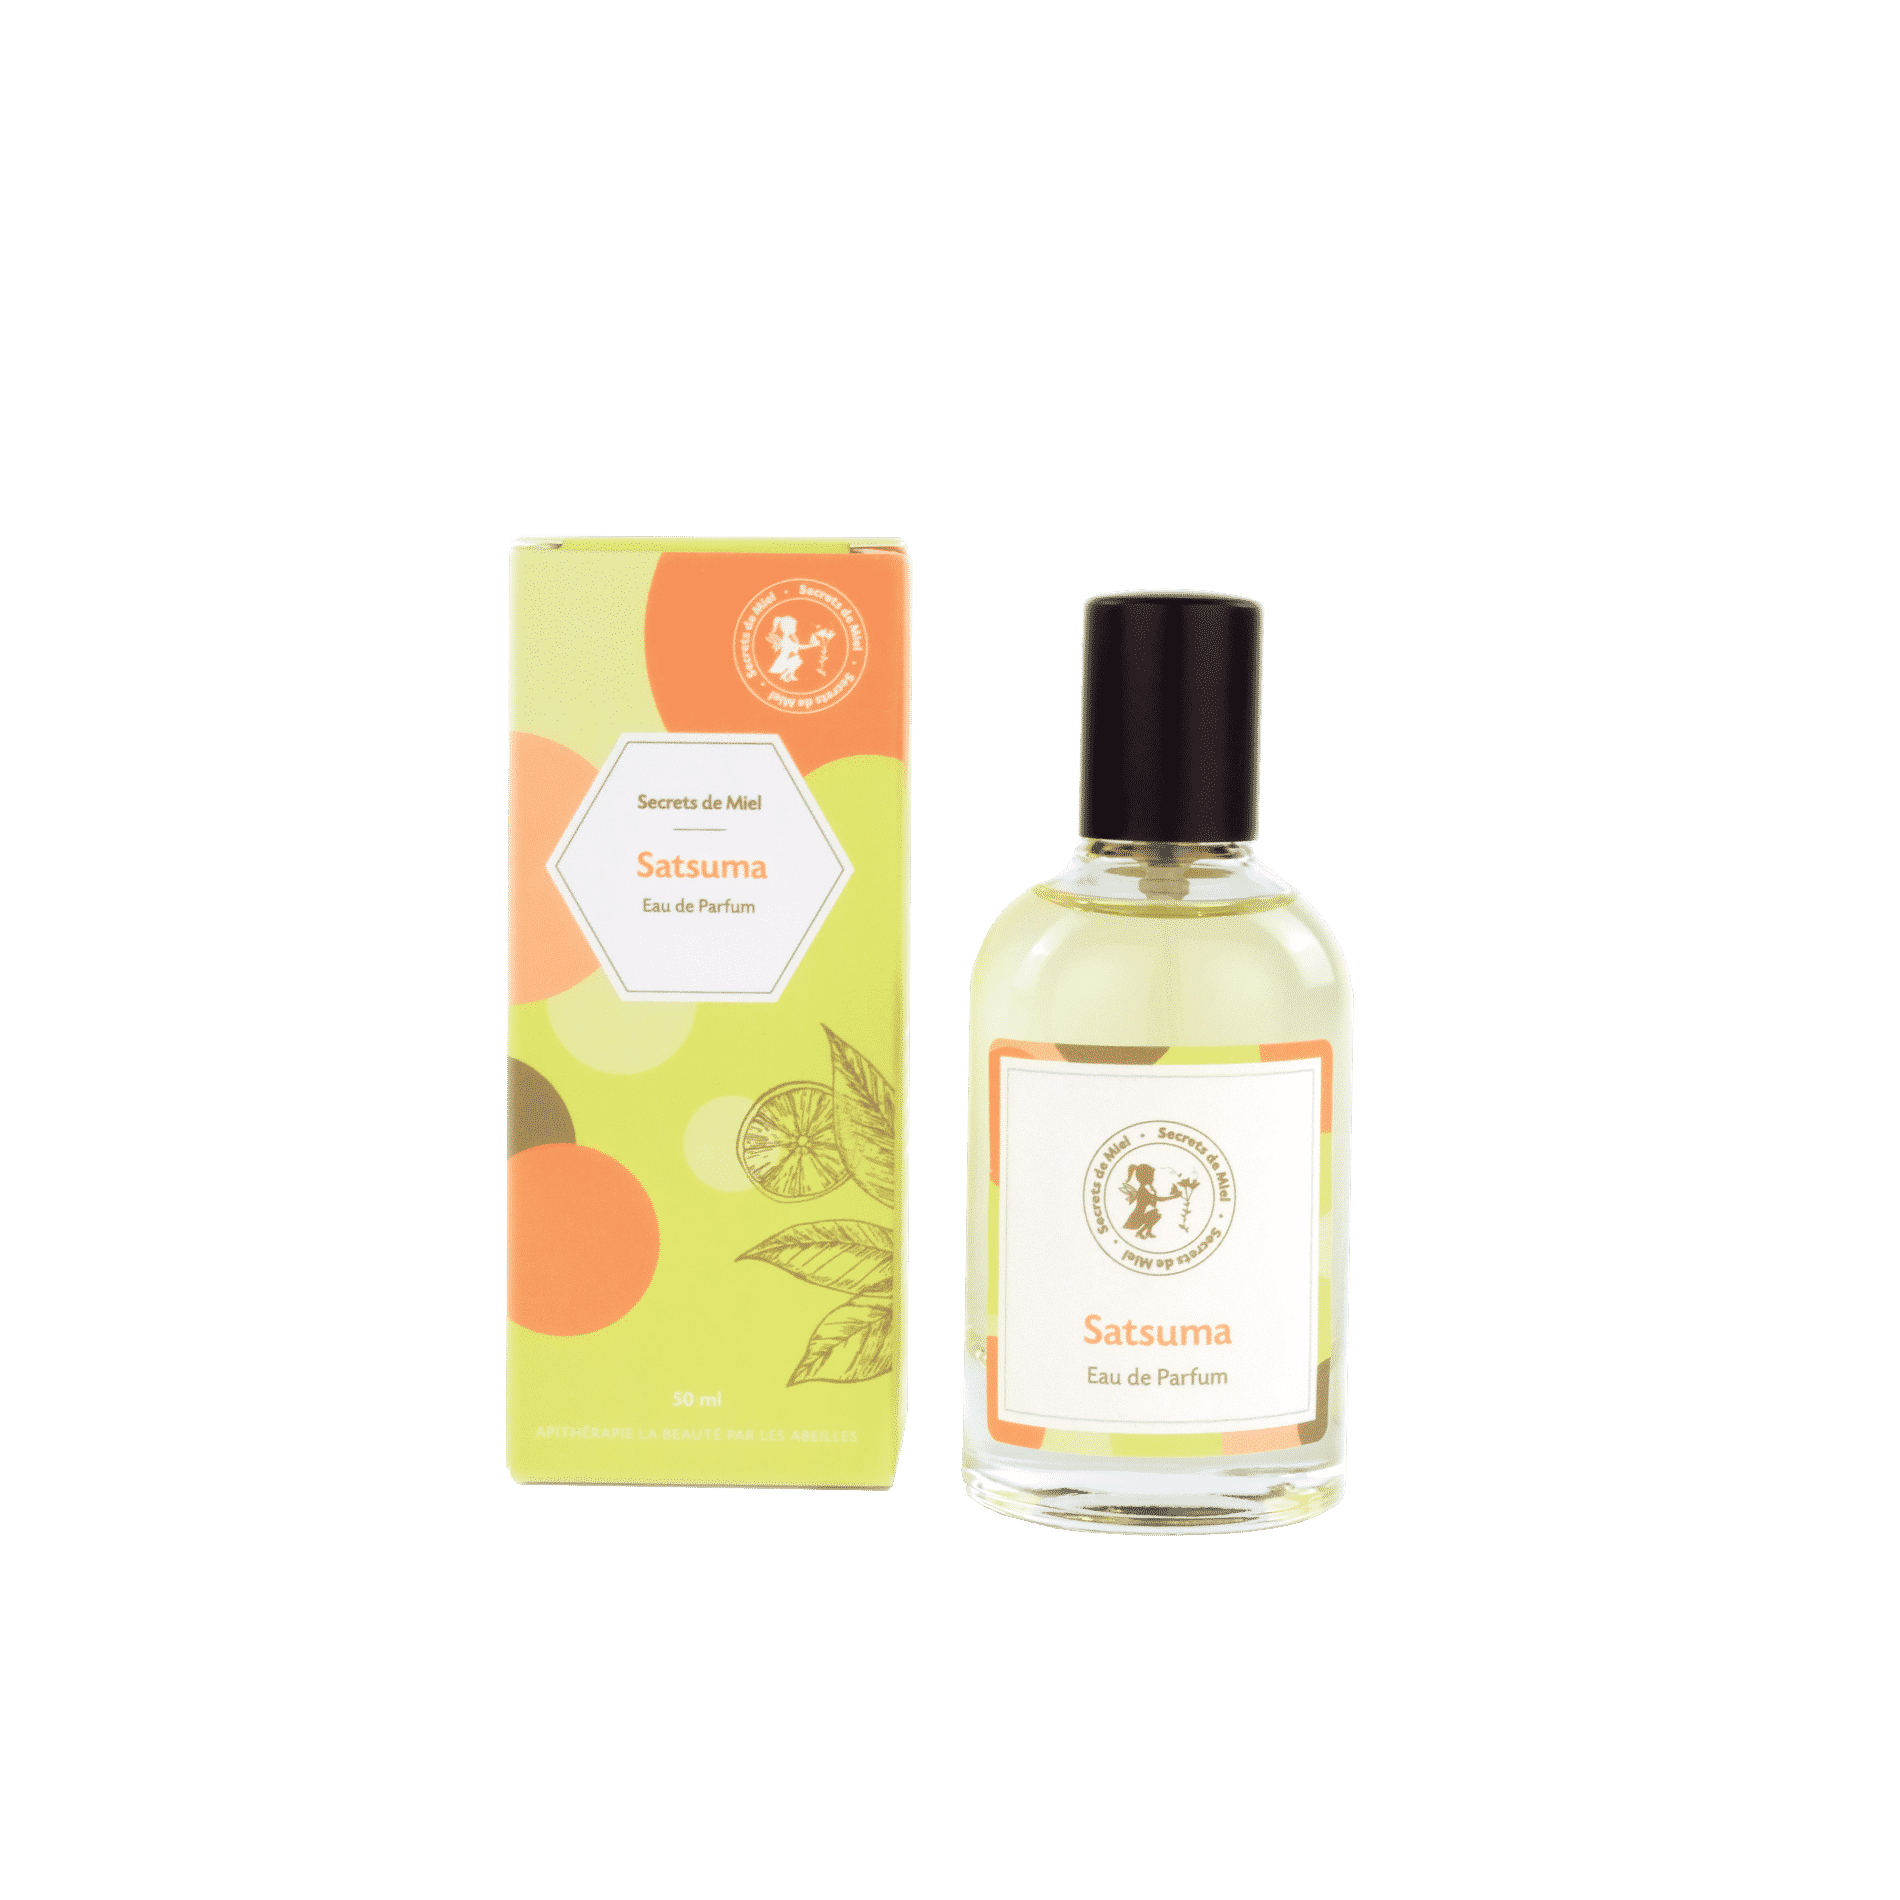 Eau de Parfum - made in France - frais épicé - pétillant - idée parfum - mixte - Secrets de Miel